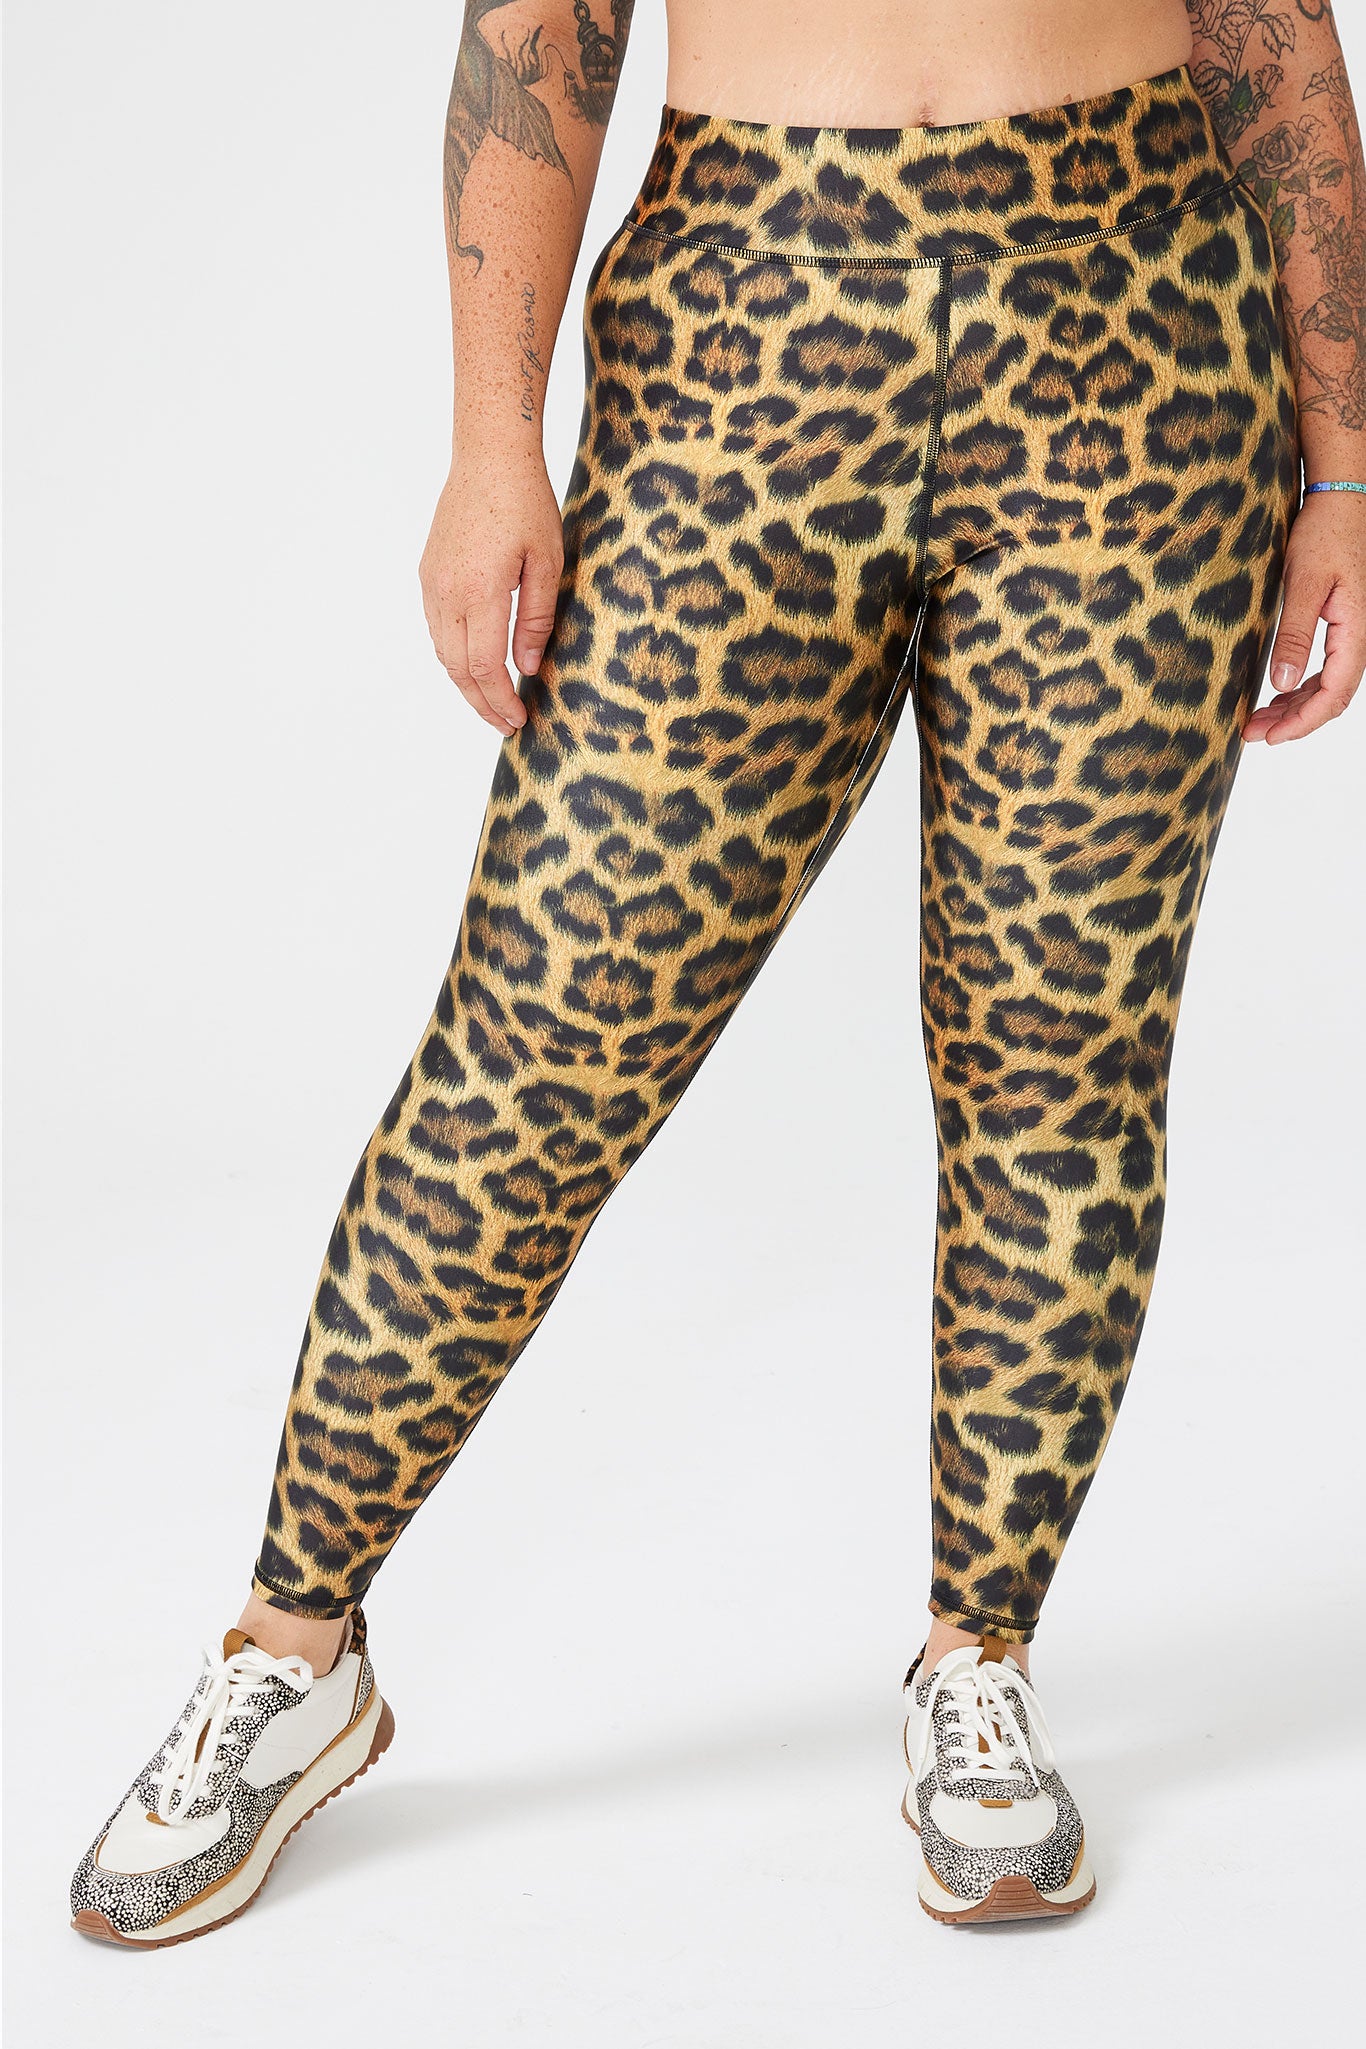 Hot Leopard Print Leggings for Women Summer Top 2XL